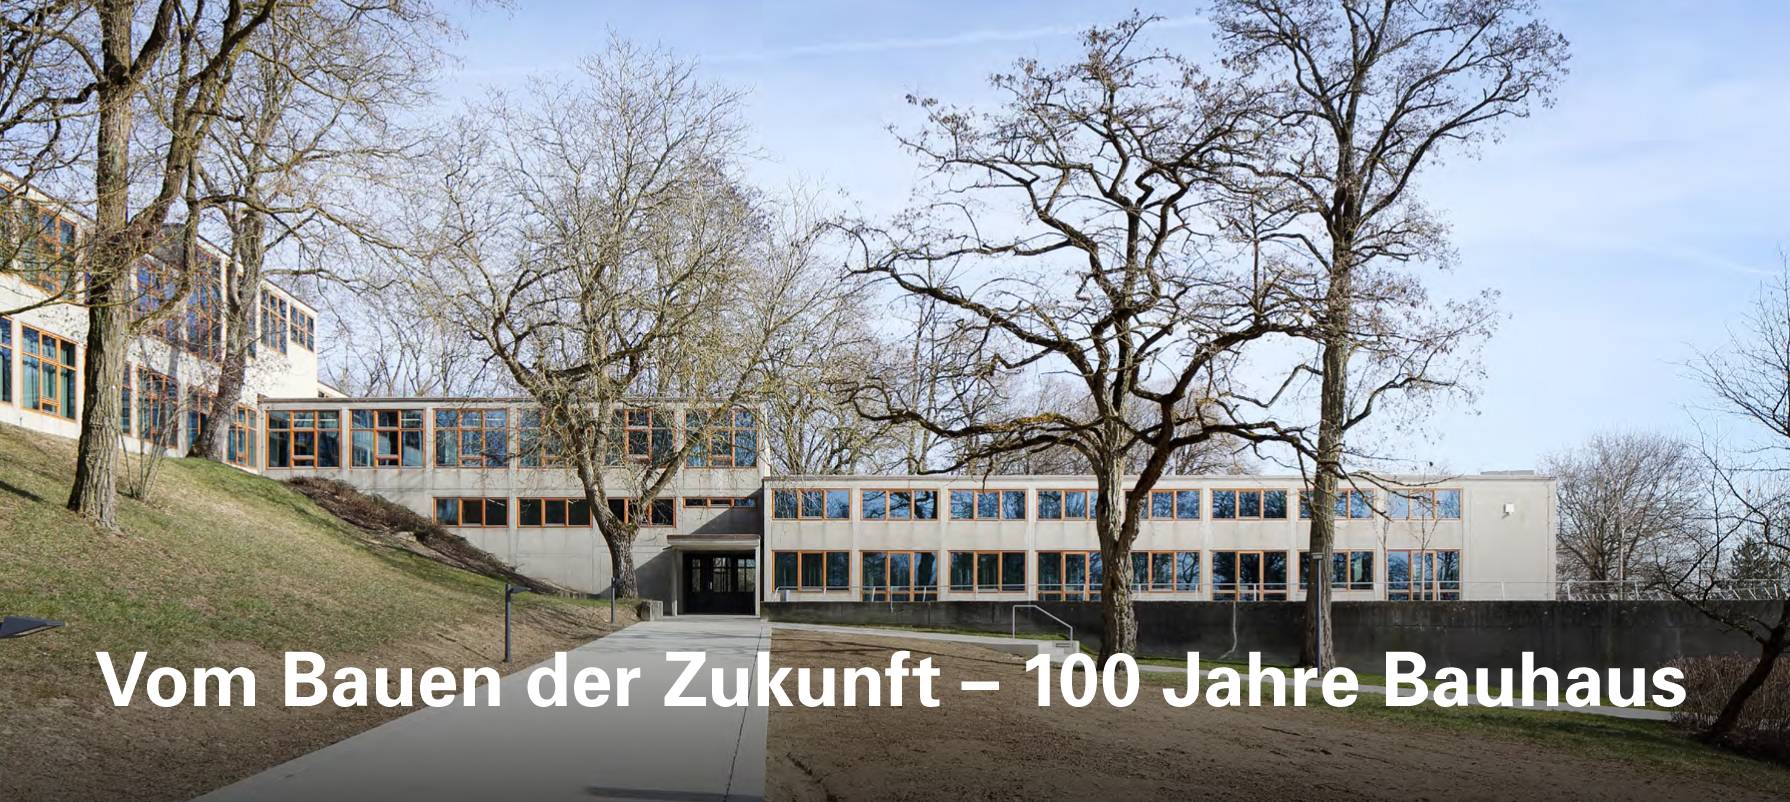 Hochschule für Gestaltung, Ulm; Architekt: Max Bill, 1955; Sanierung: hochstrasser.architekten, 2013; Foto: Conné van d'Grachten